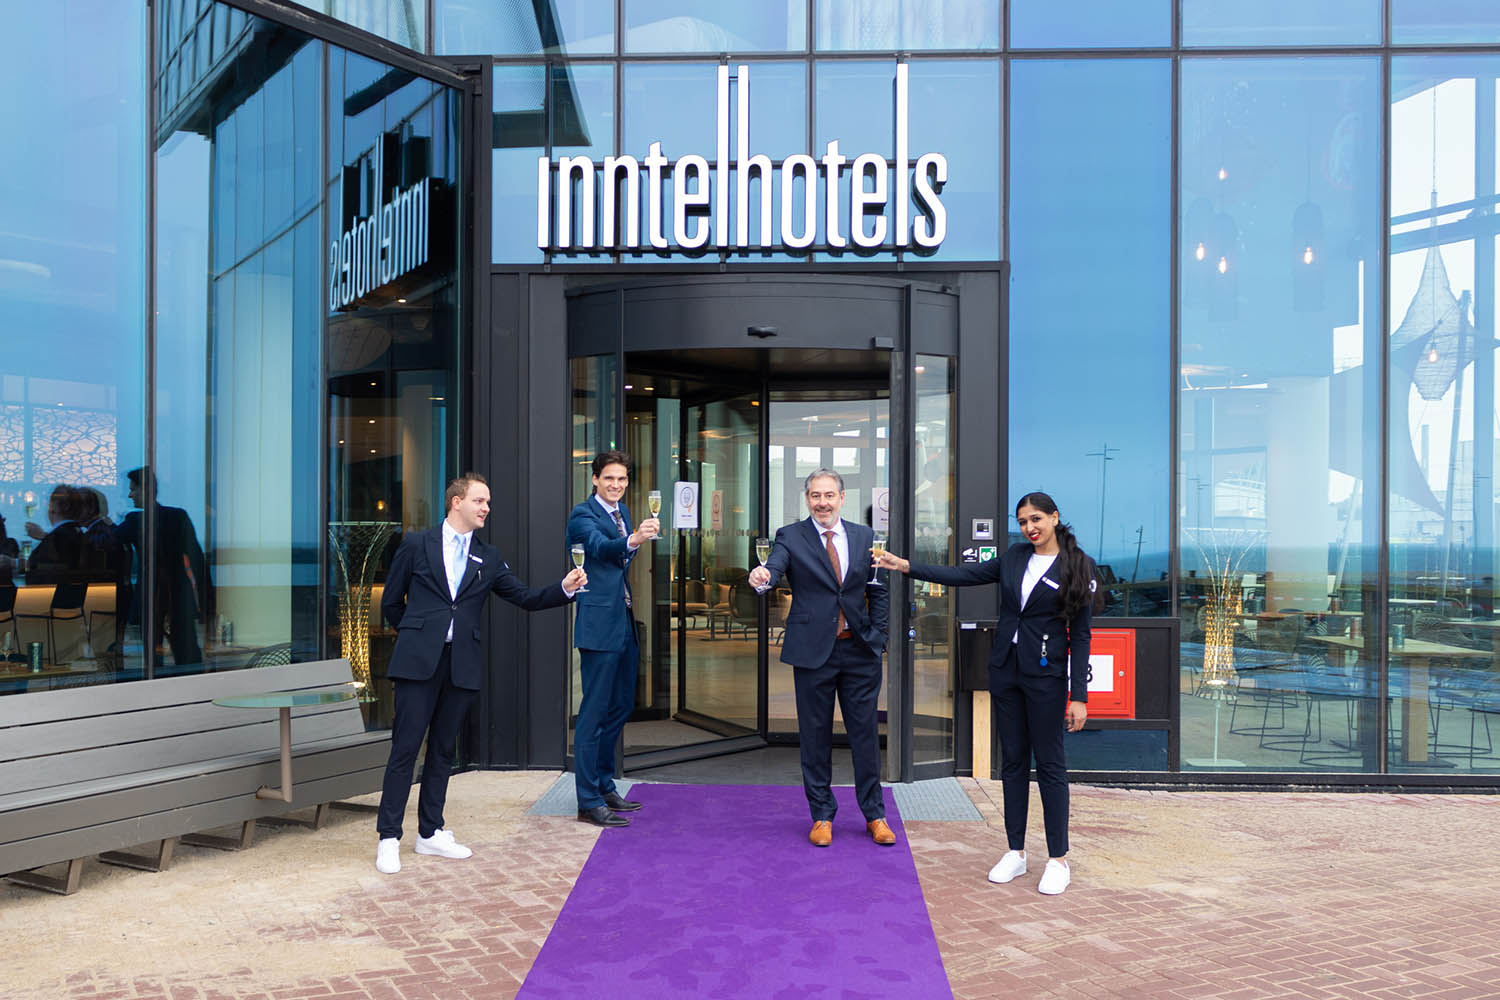 Inntel Hotels Den Haag Marina Beach - 4 sterren hotel in Scheveningen is open